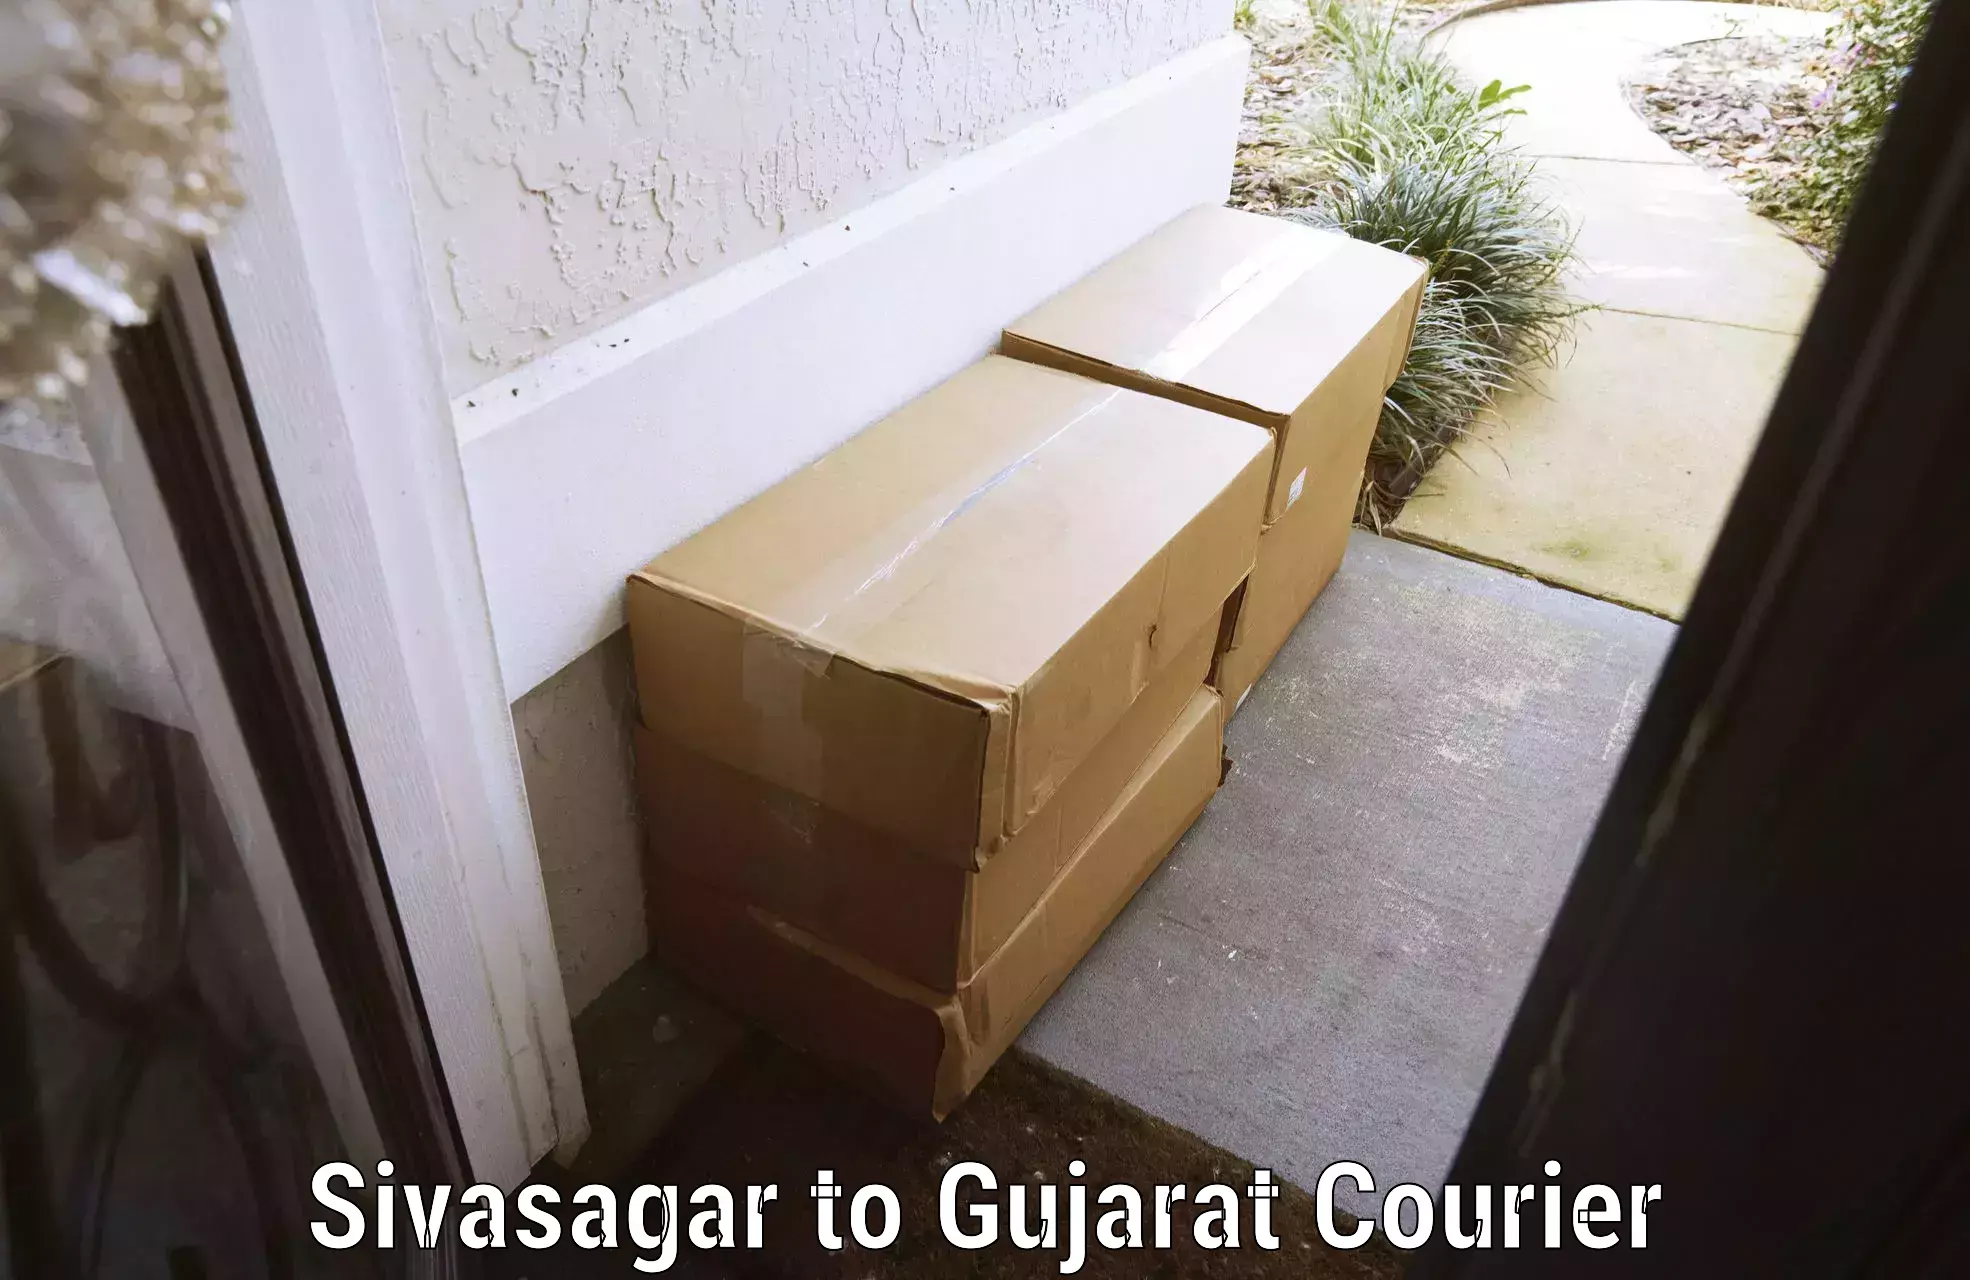 Luggage delivery providers Sivasagar to Gujarat